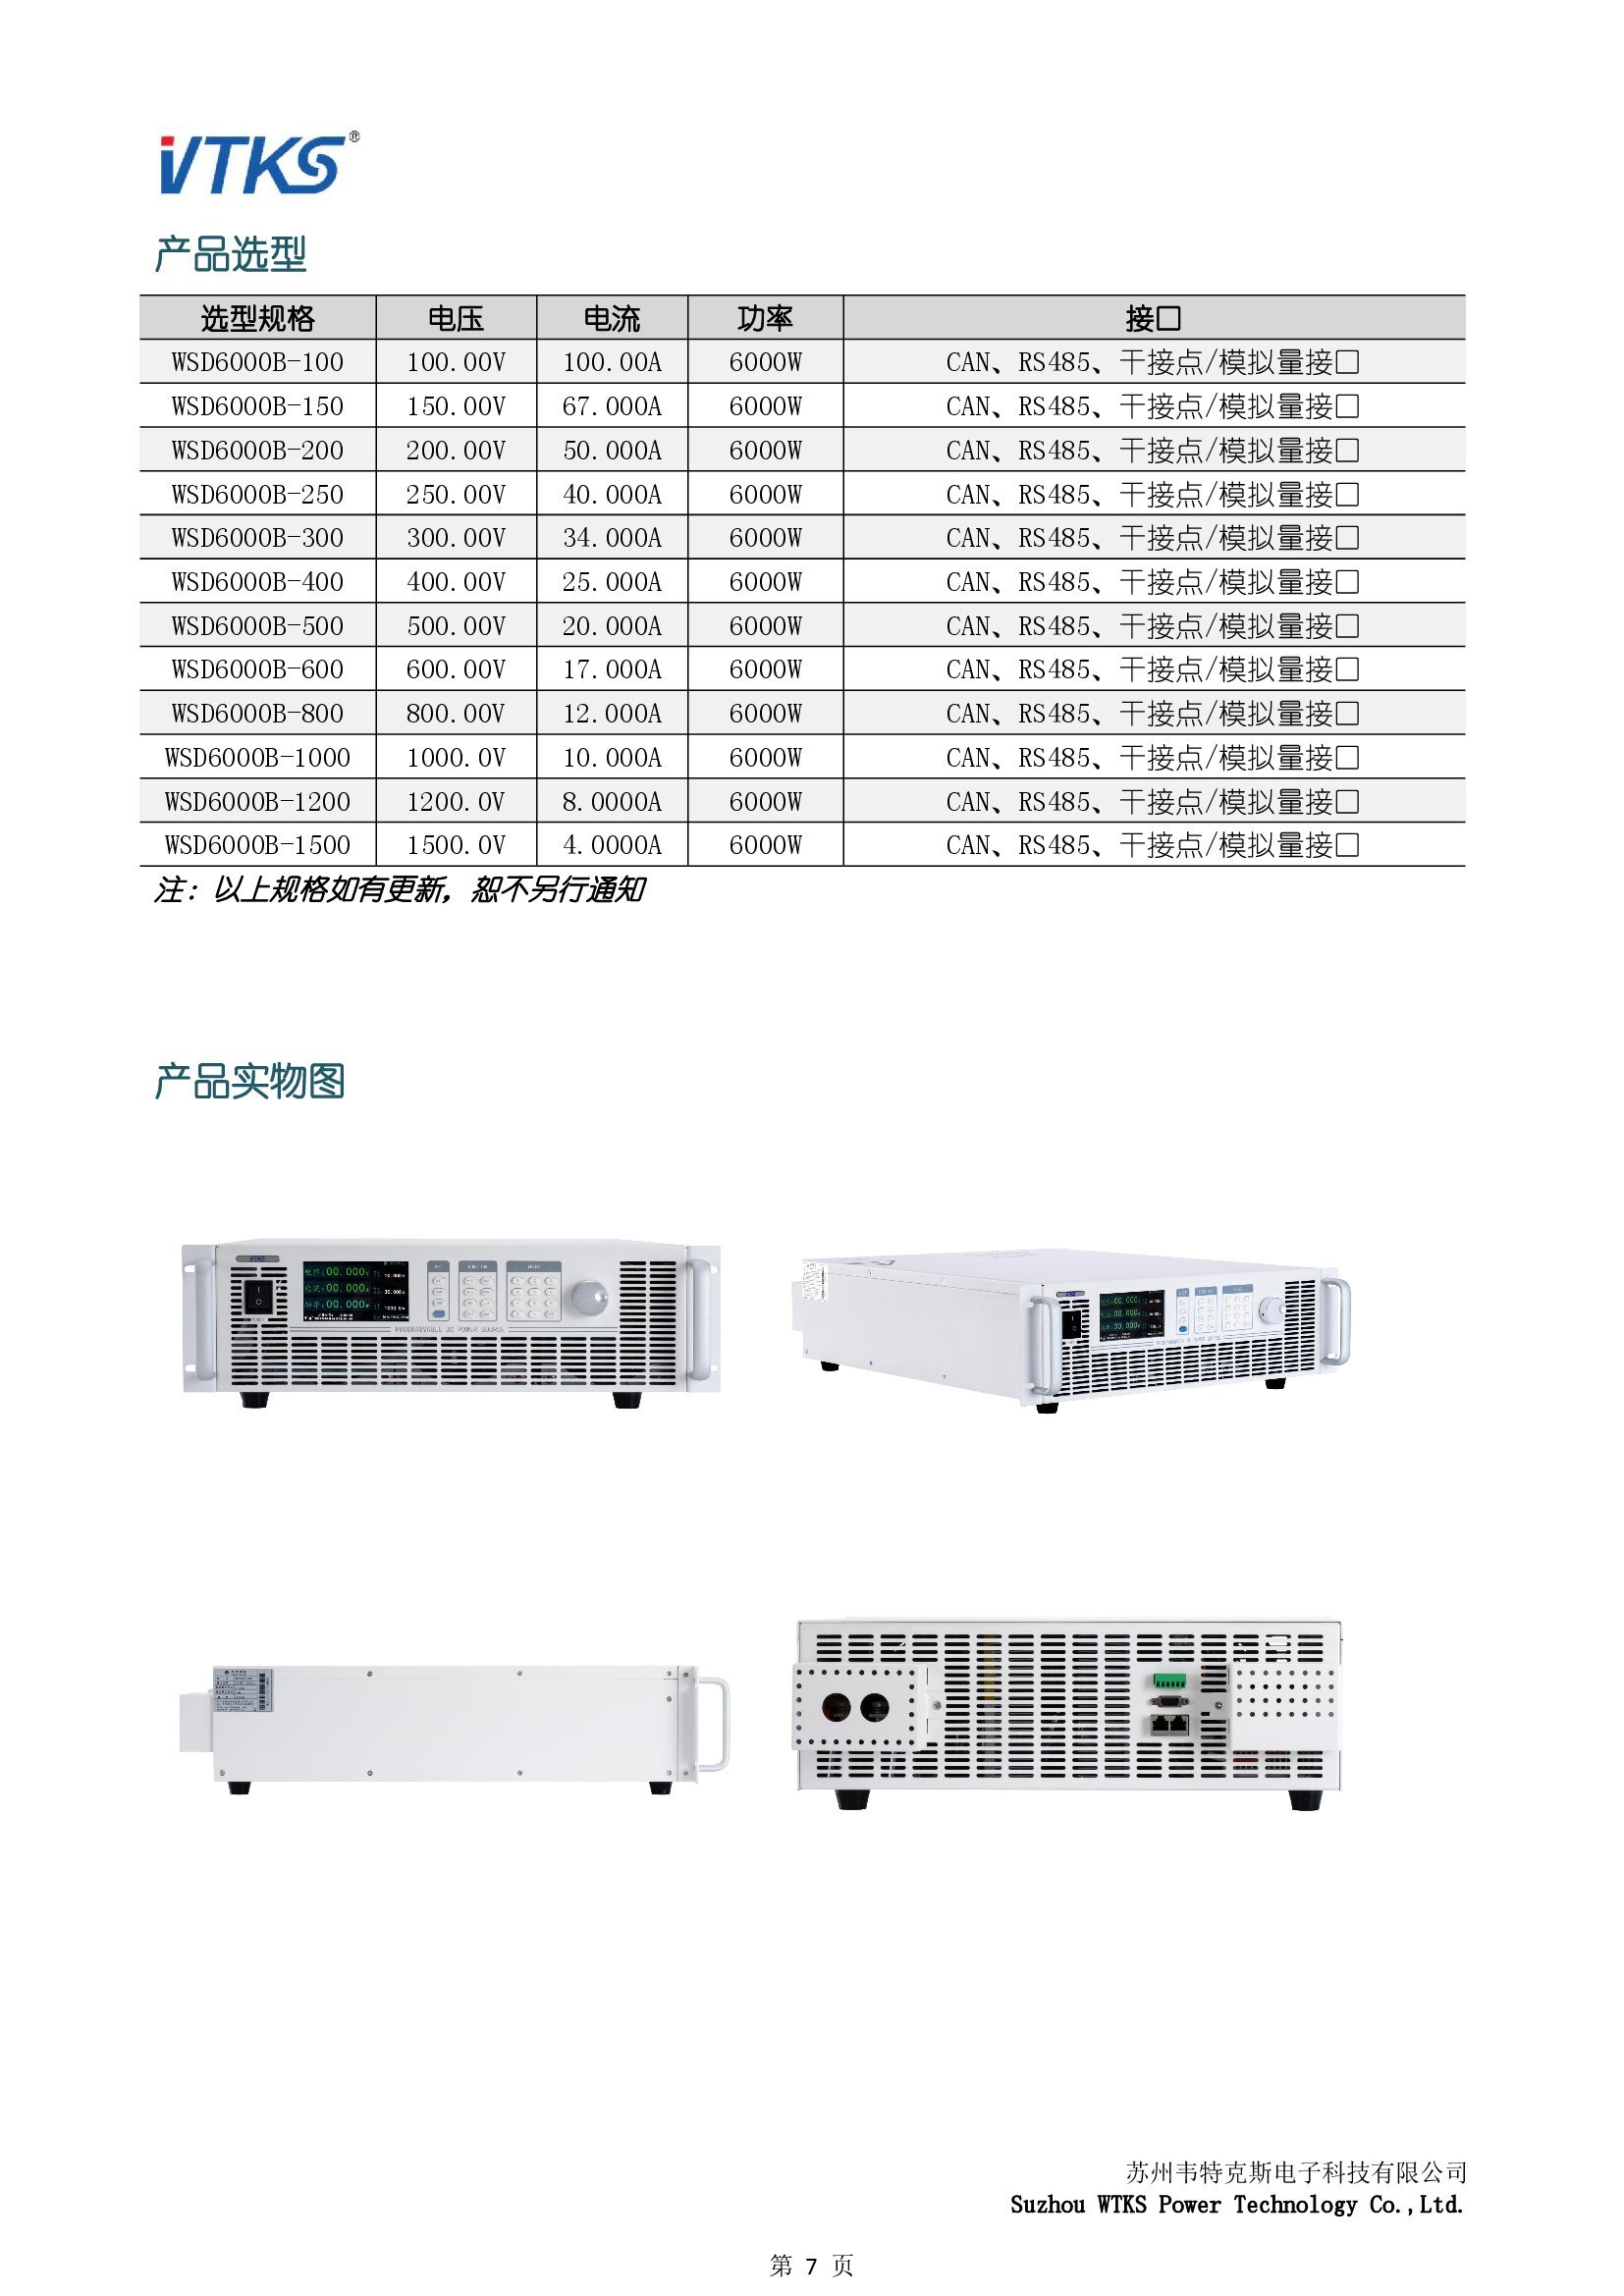 WSD6000B系列宽范围可编程直流电源技术资料_V1.14_00007.jpg